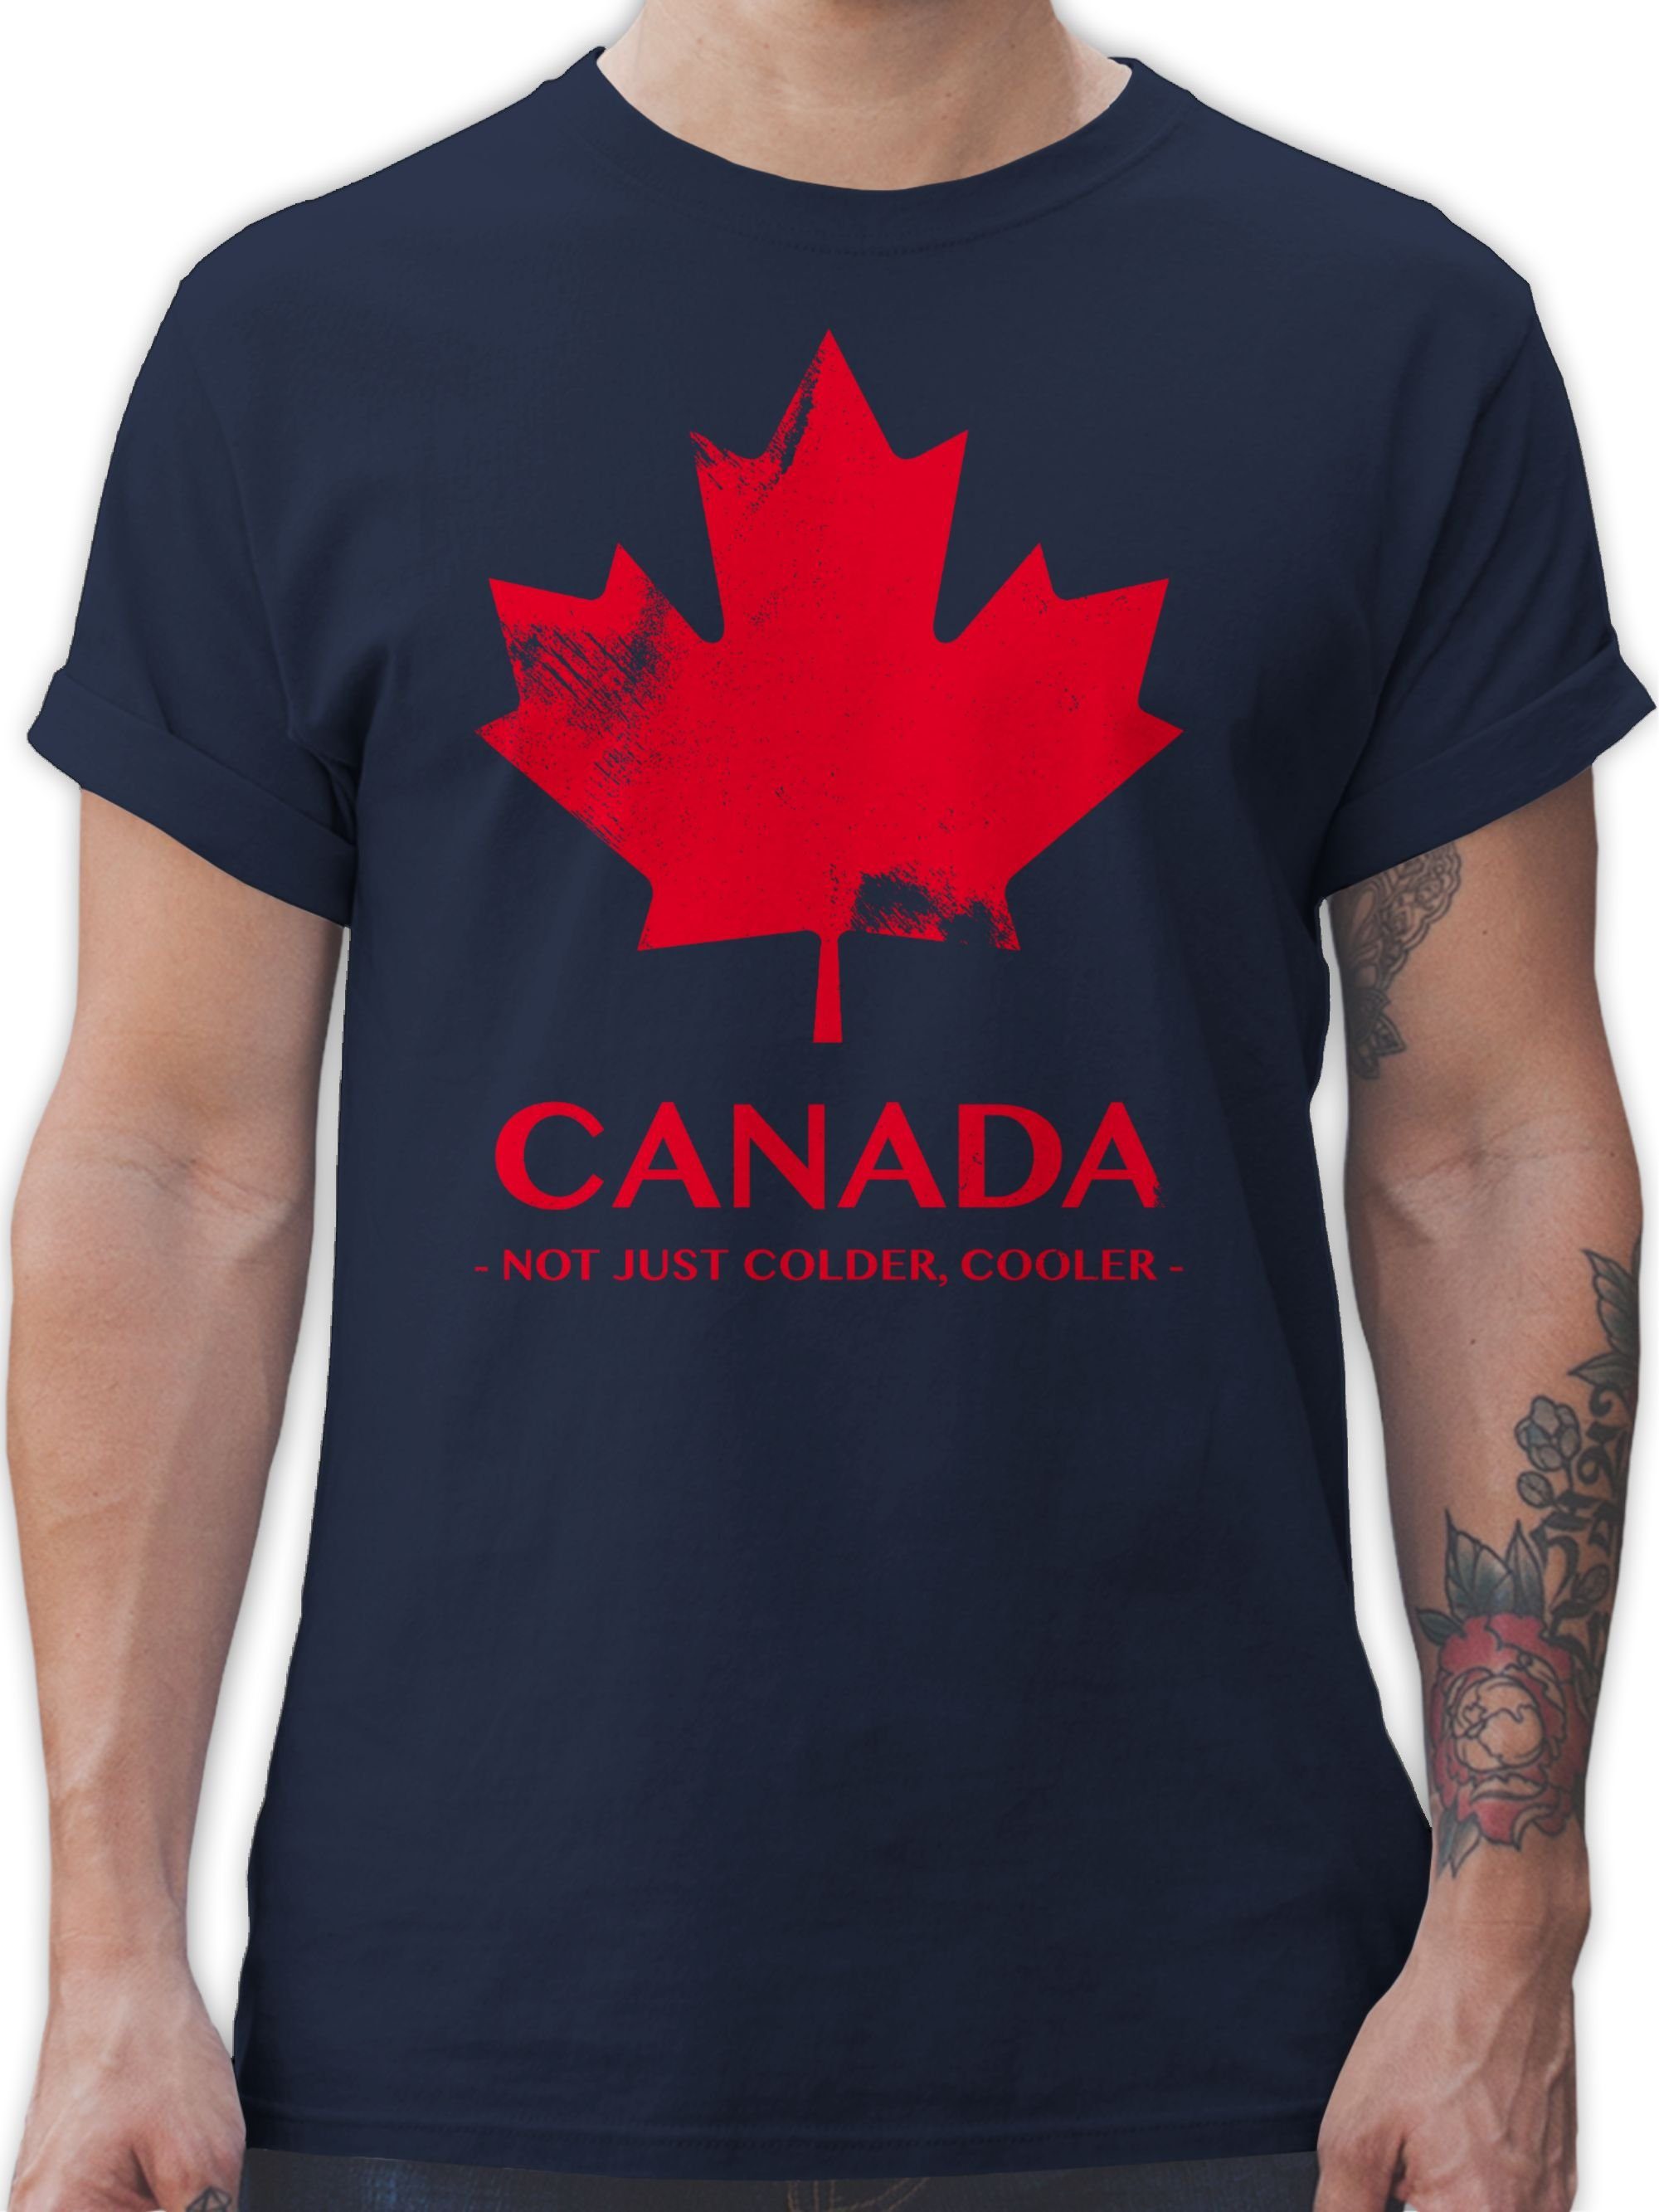 Shirtracer T-Shirt Canada Not just colder cooler - Souvenir Geschenk Länder Wappen 3 Navy Blau